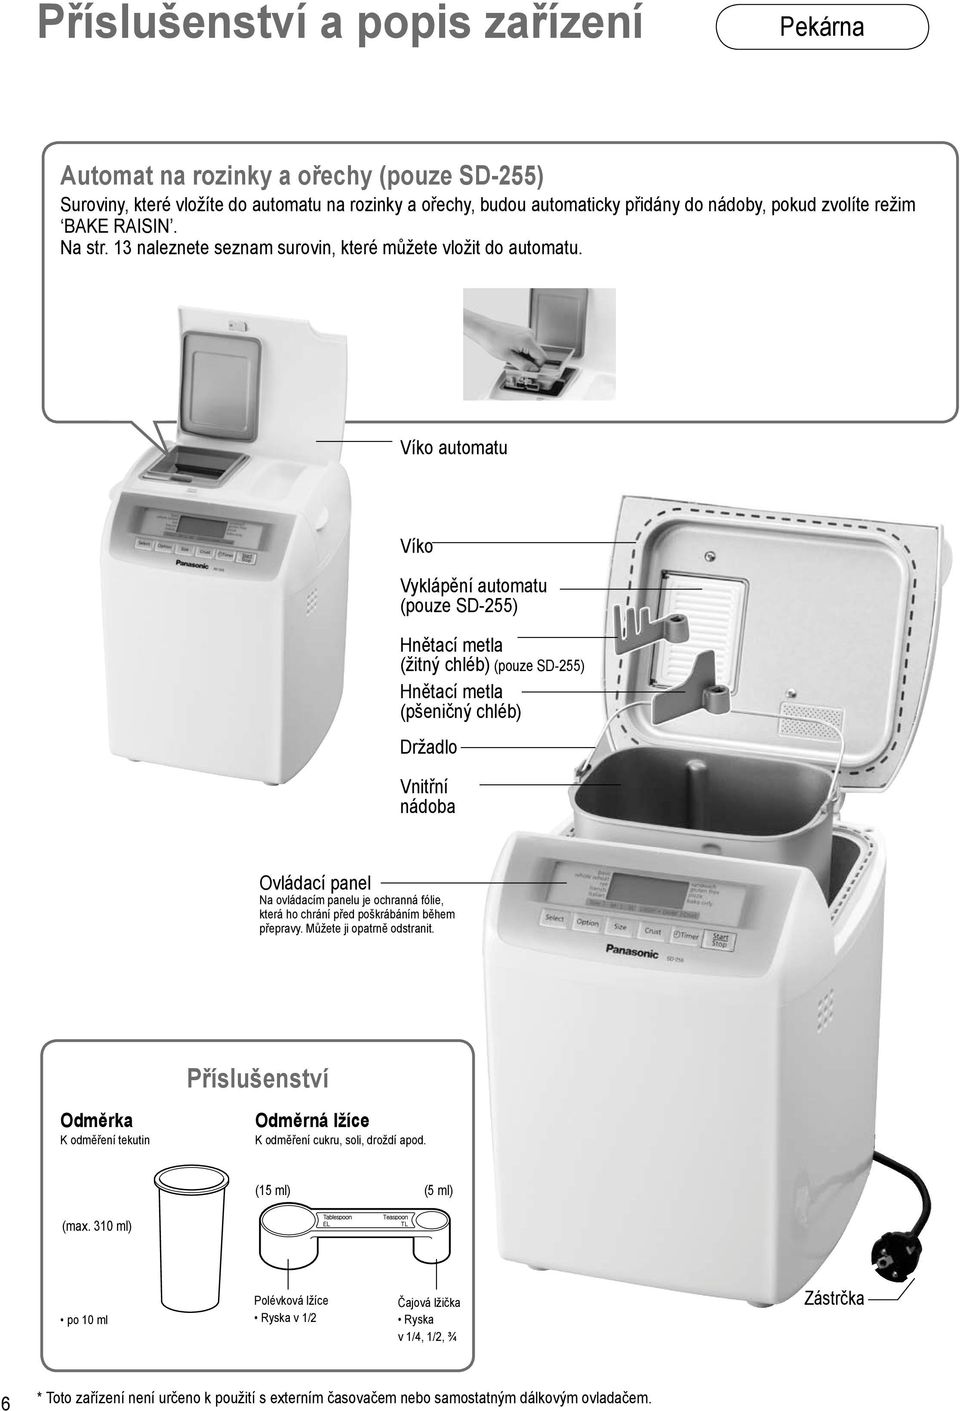 Víko automatu Víko Vyklápění automatu (pouze SD-255) Hnětací metla (žitný chléb) (pouze SD-255) Hnětací metla (pšeničný chléb) Držadlo Vnitřní nádoba Ovládací panel Na ovládacím panelu je ochranná